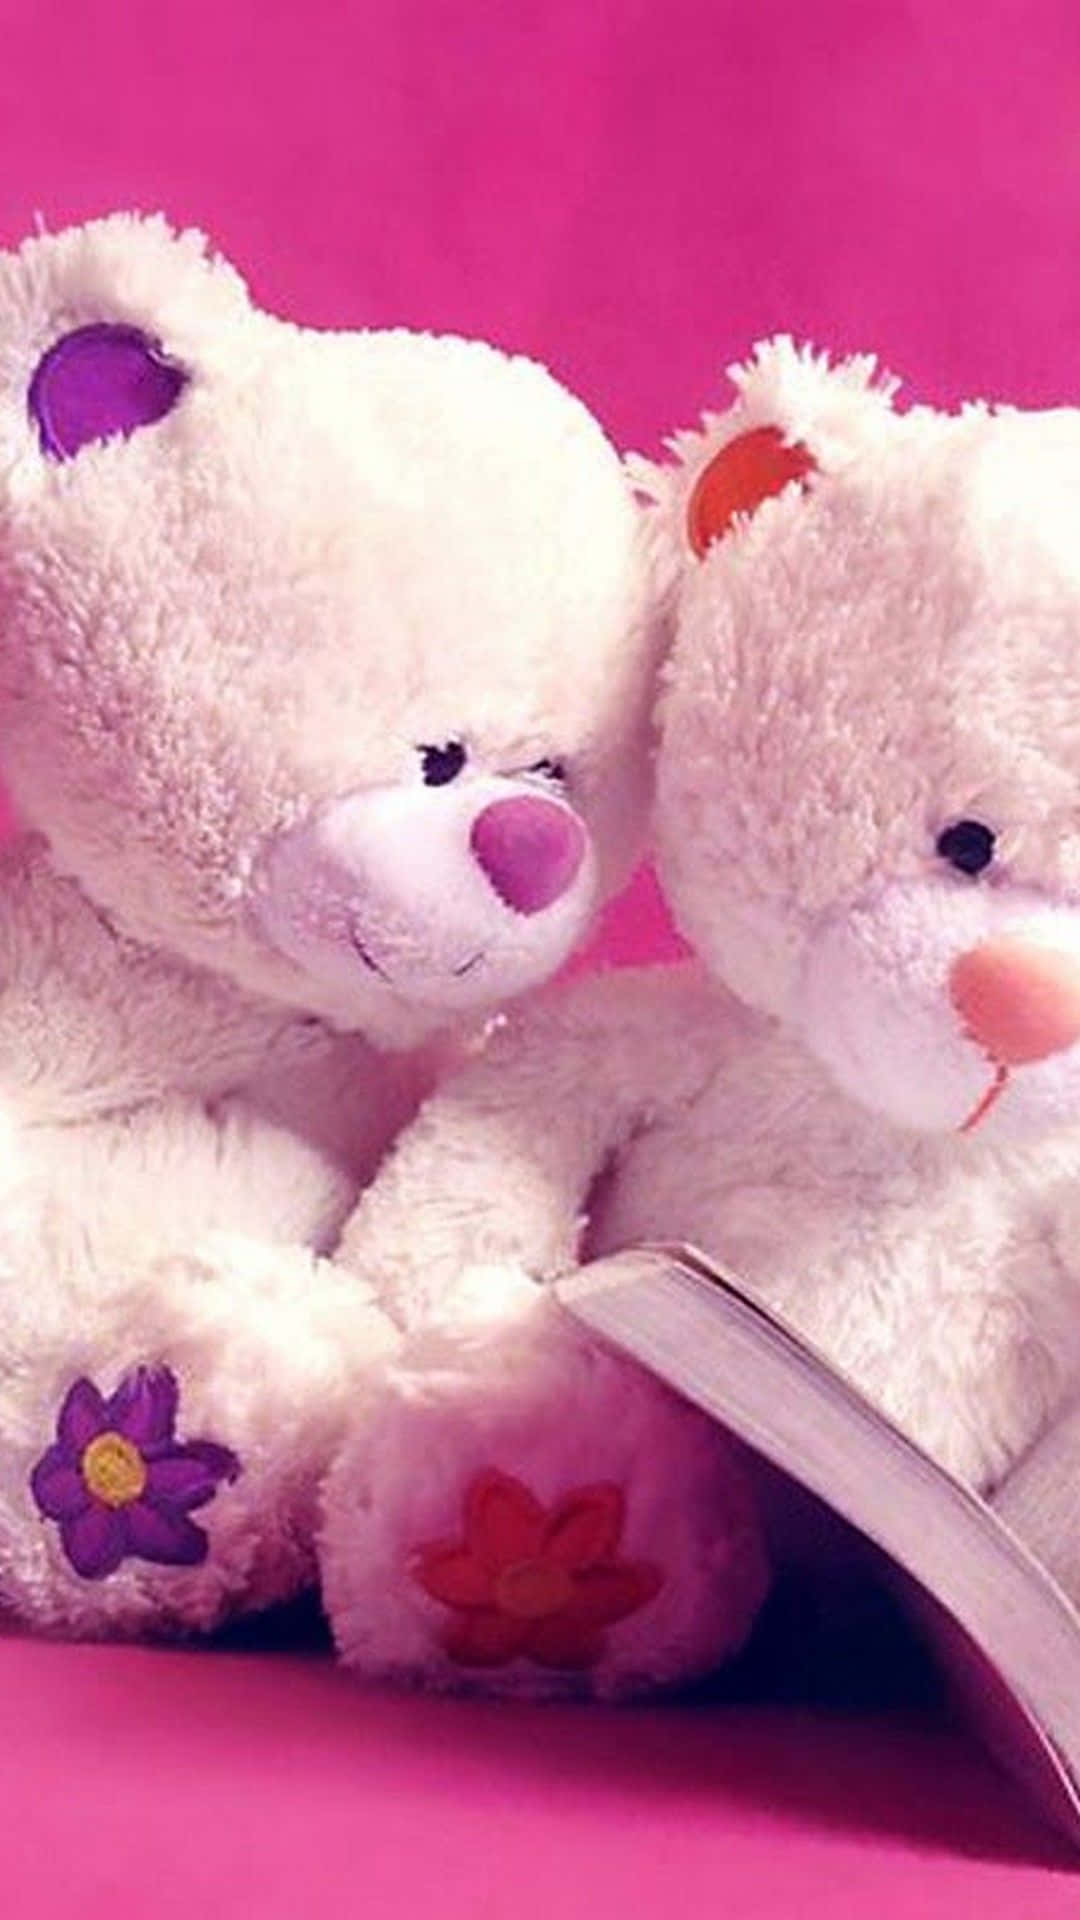 cute teddy bear couple